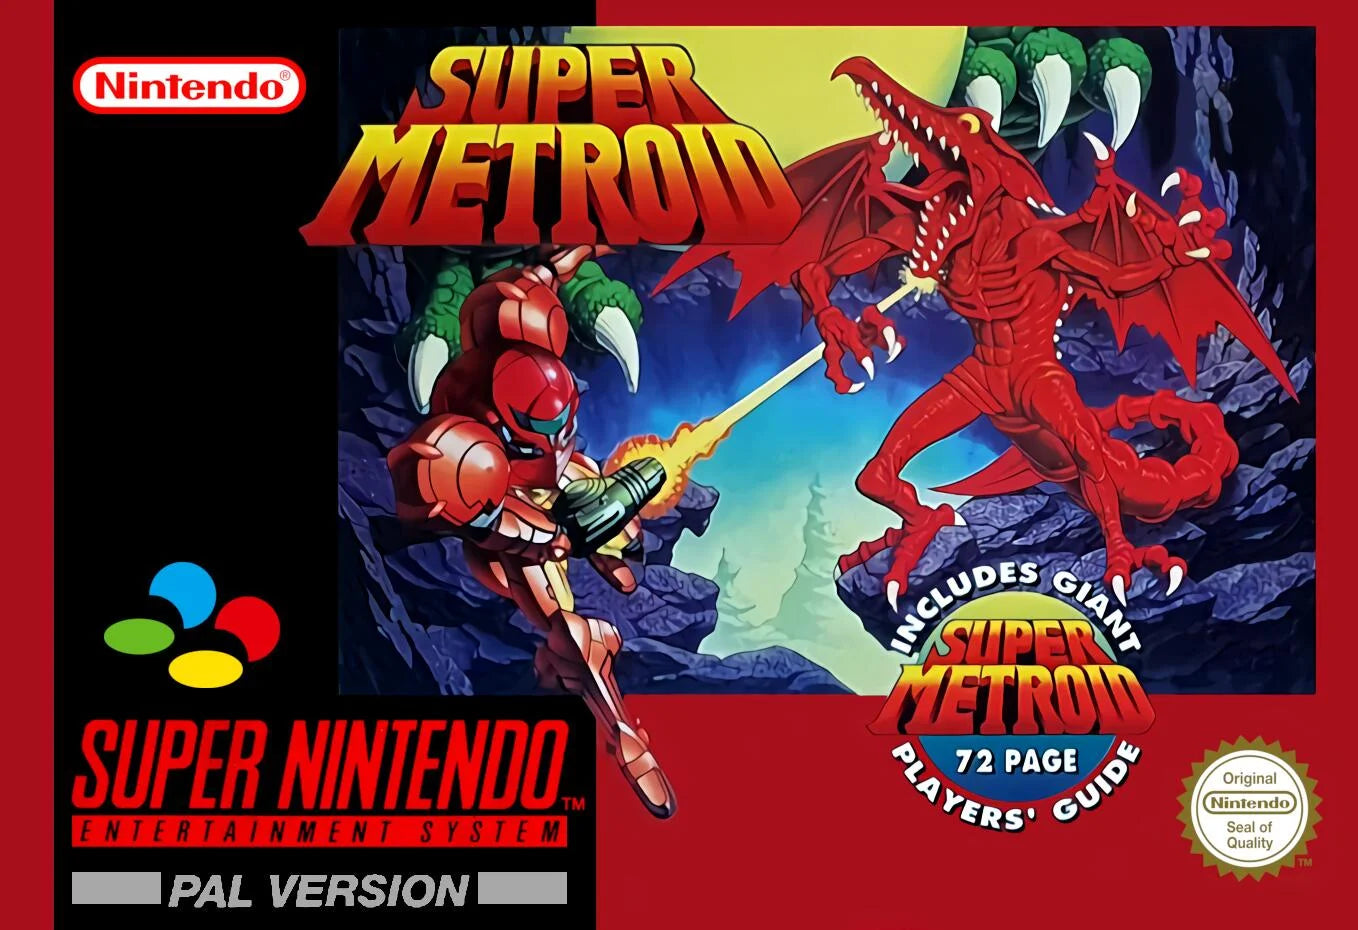 Super Nintendo: Super Metroid